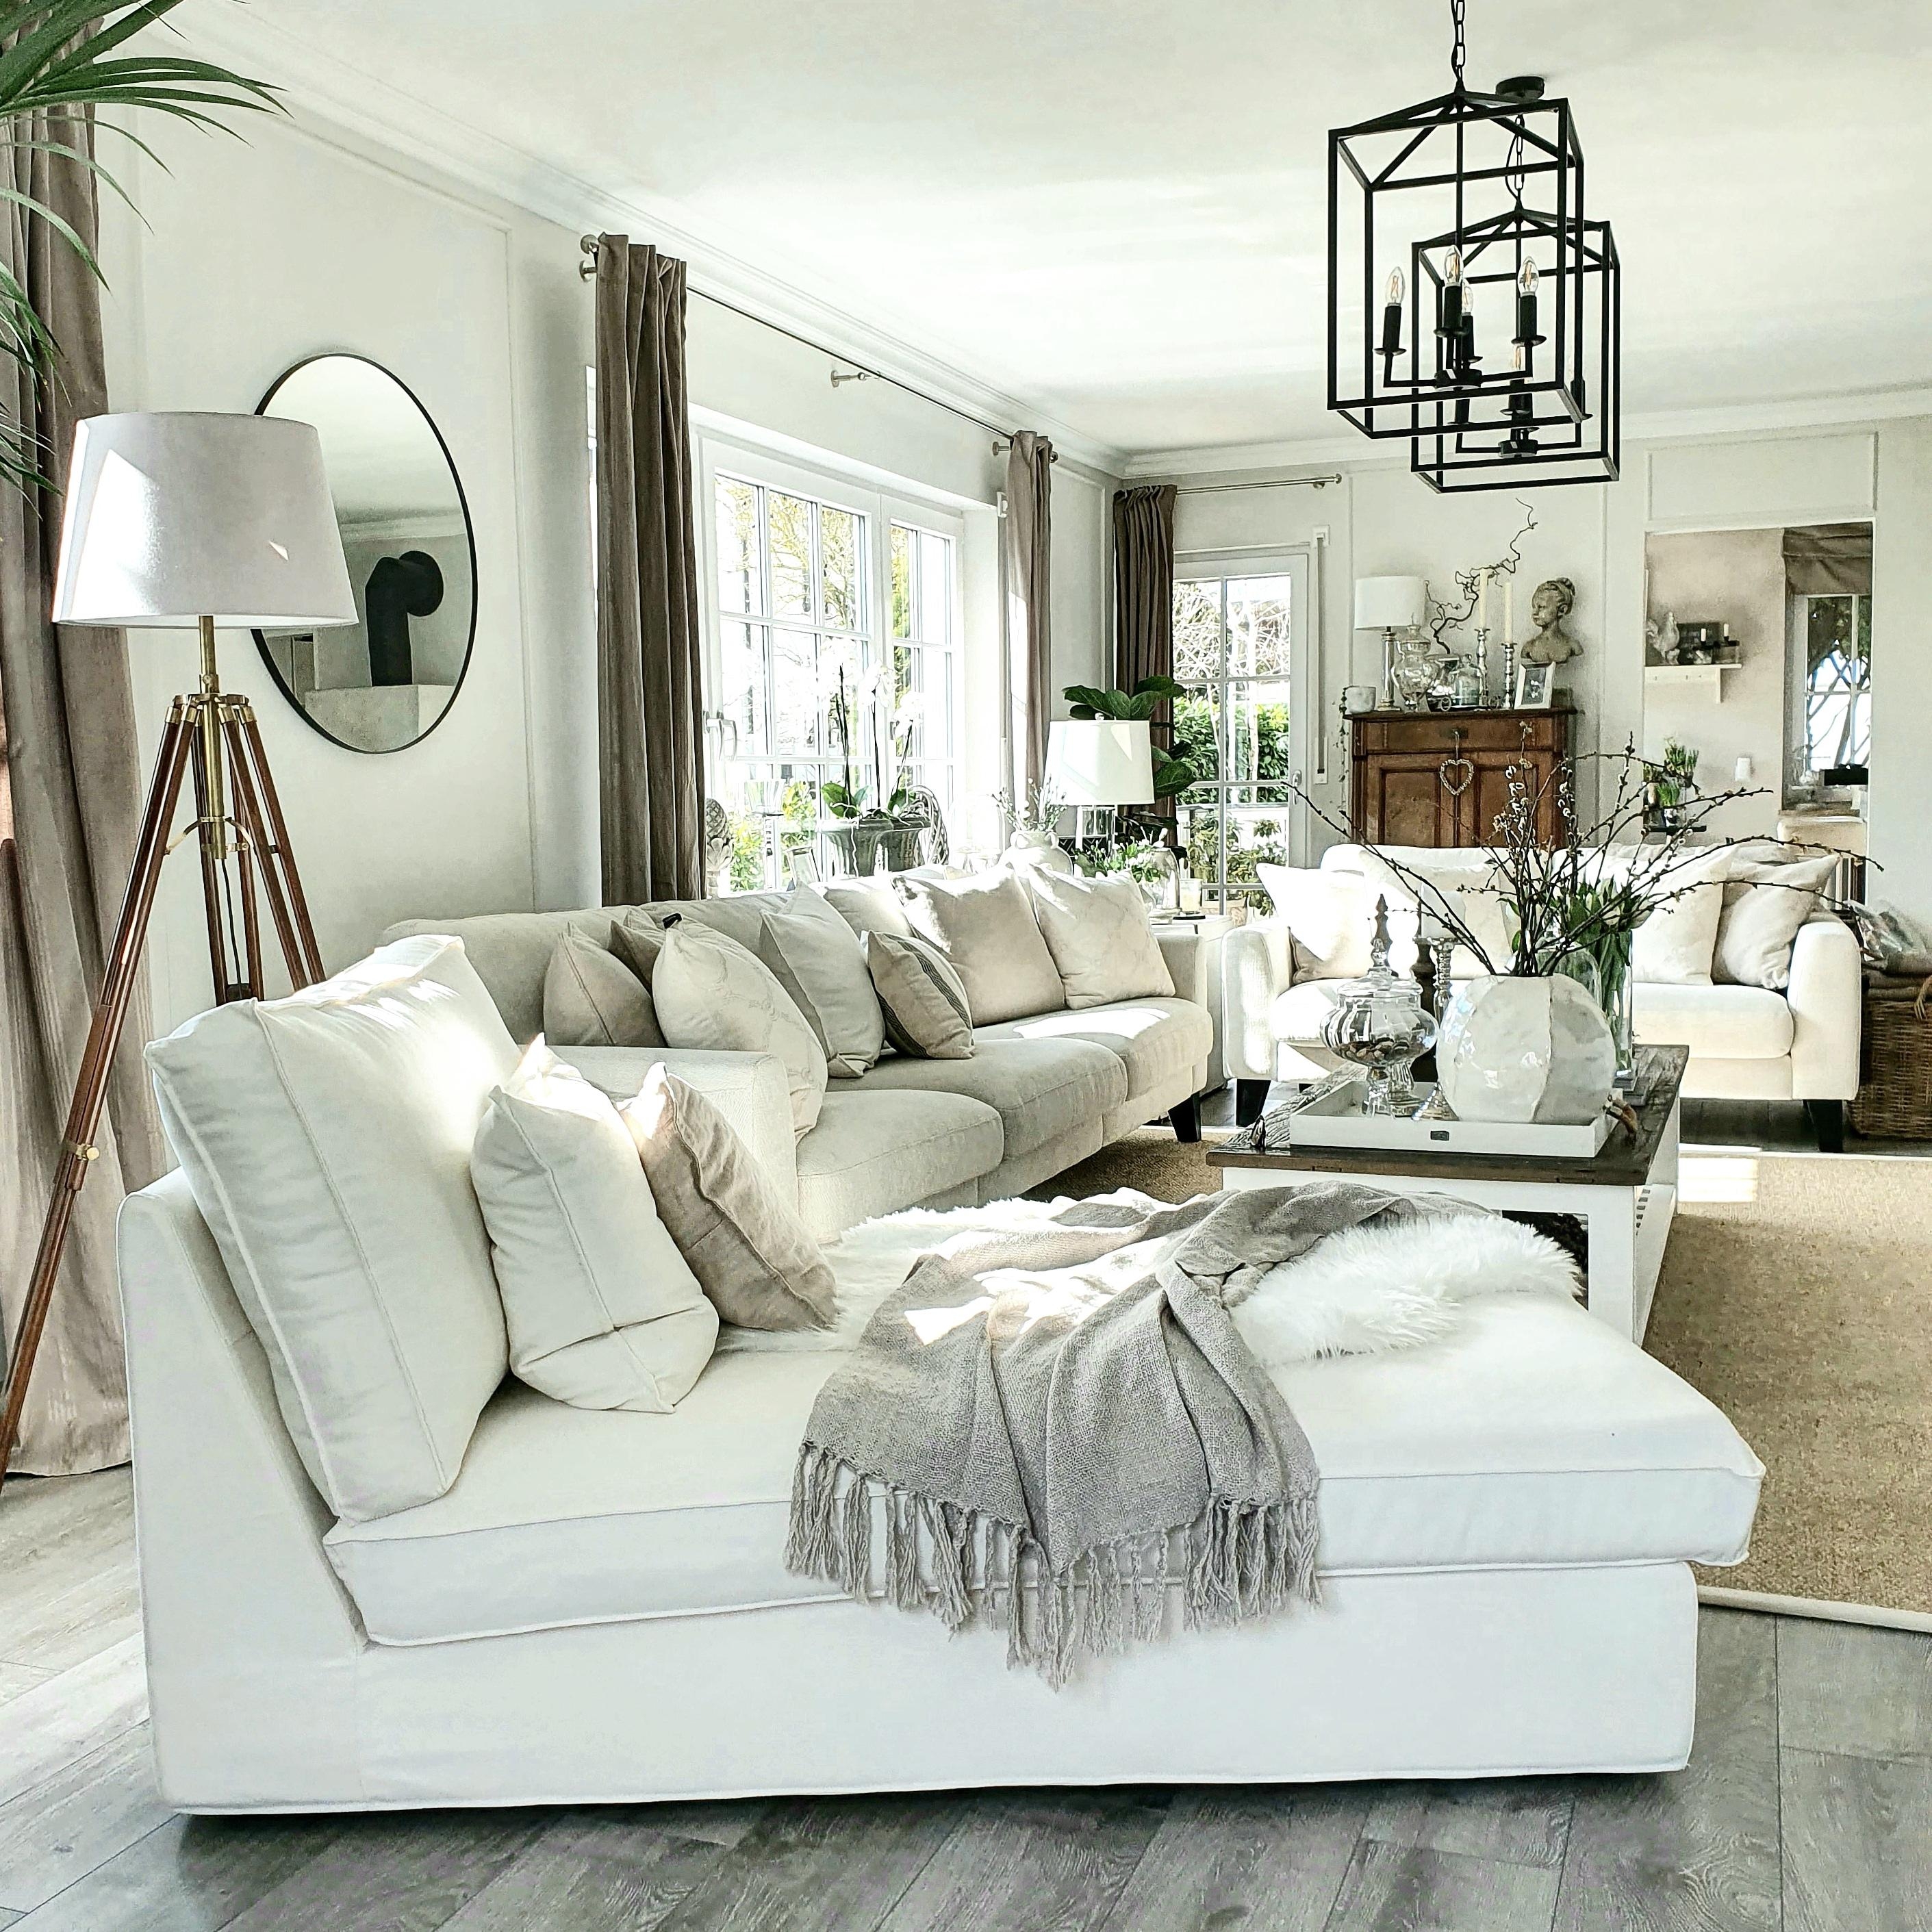 #Livingroom #cozyliving #landhausstil #hamptonsliving #wohnzimmer #farmhouse #couchliebe